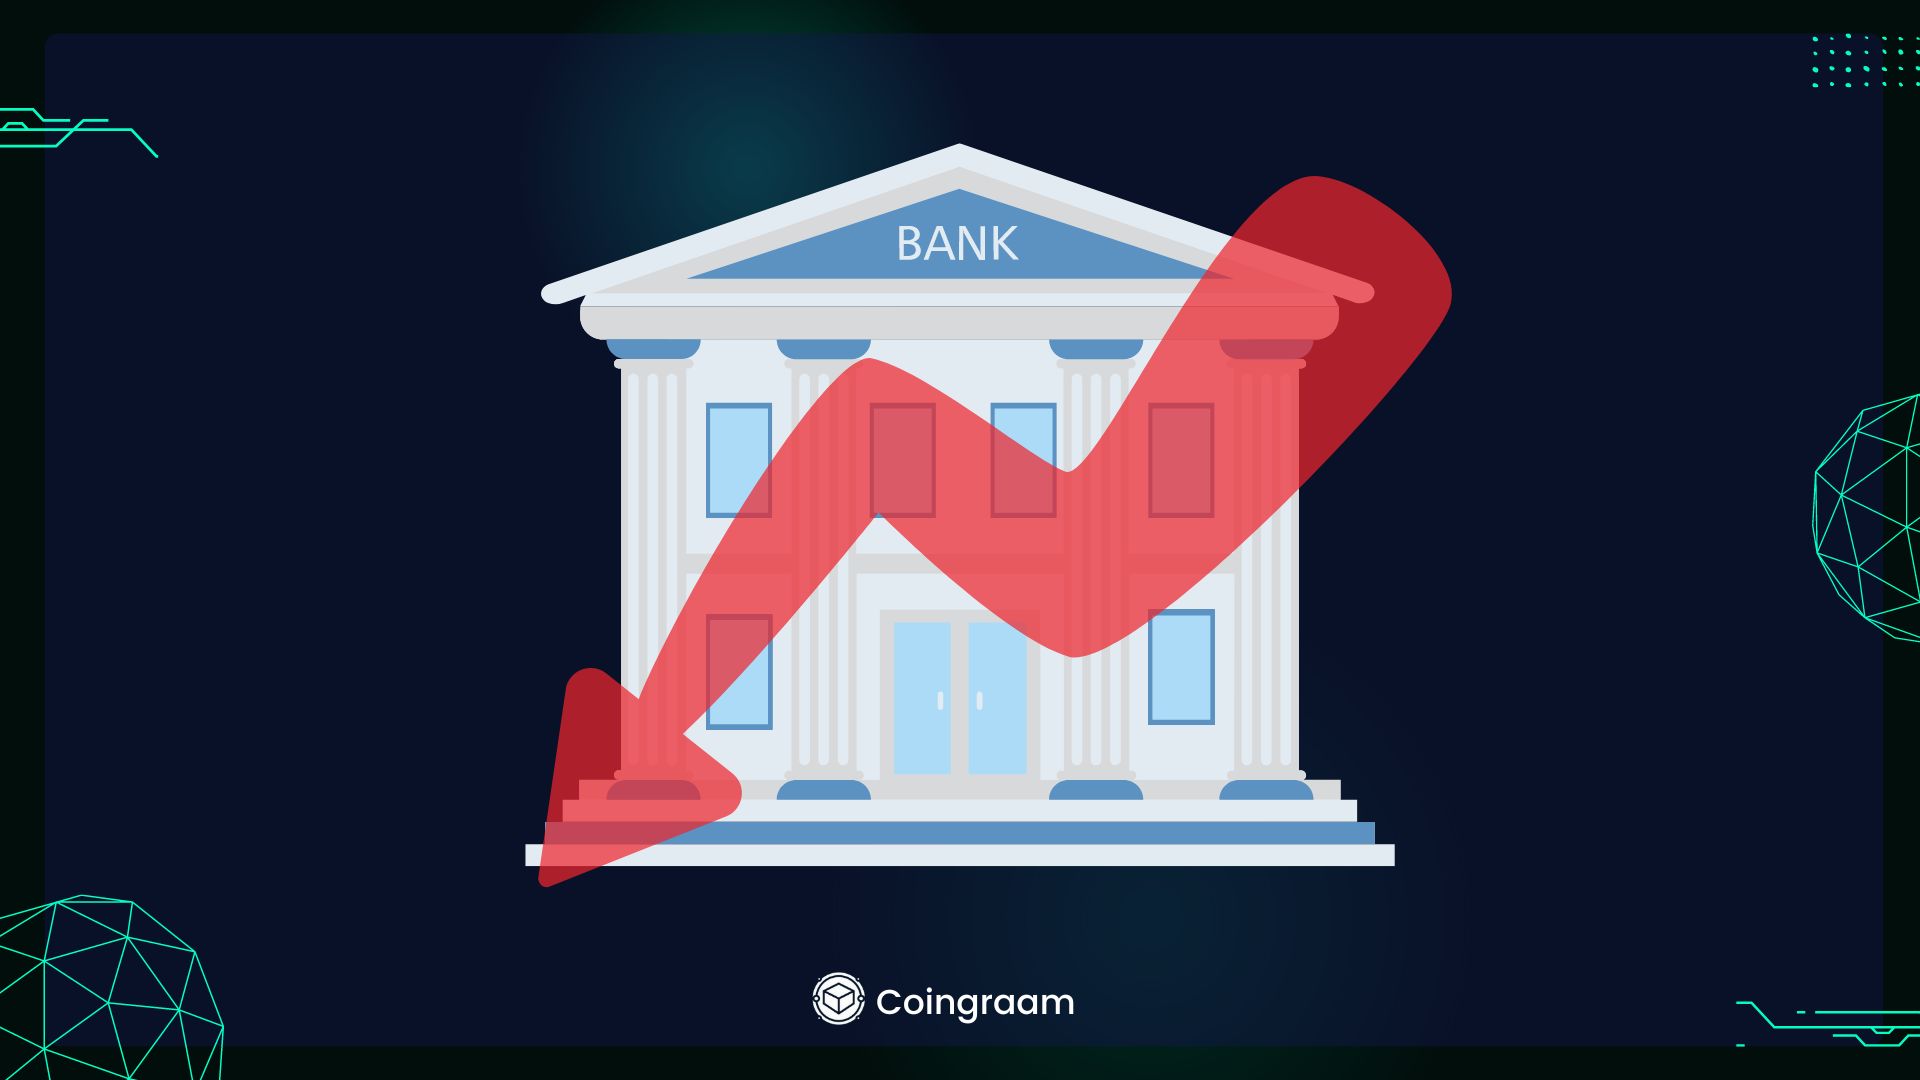 یک قدم تا سقوط یک بانک دیگر در آمریکا

